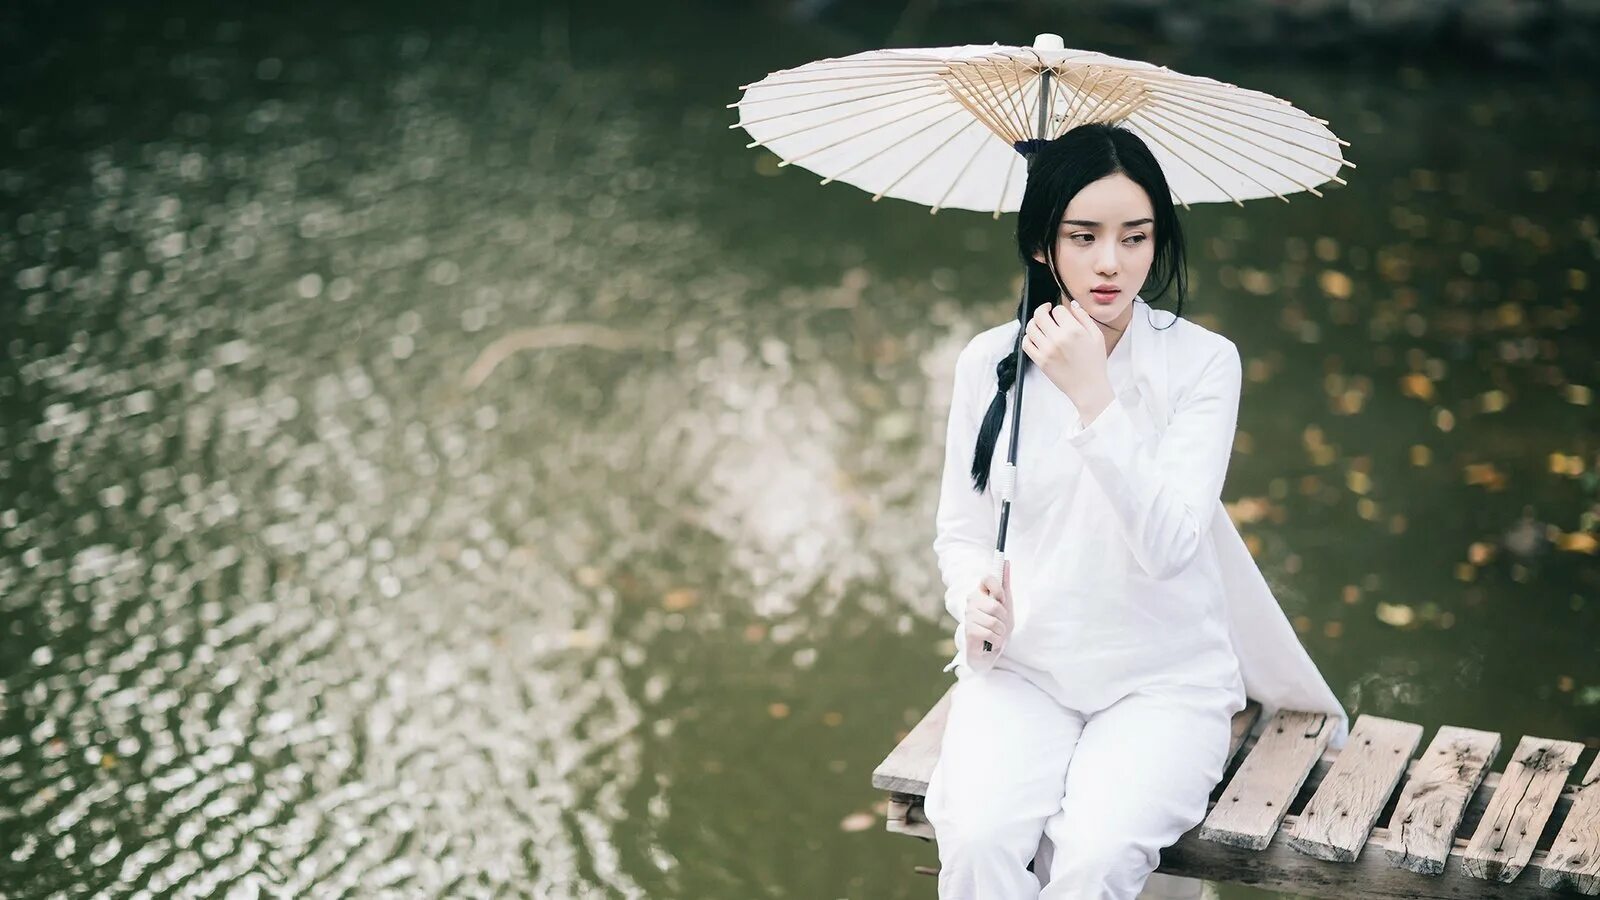 Umbrella dress. Китайские девушки. Японка с зонтом. Китаянка с зонтиком. Фотосессия в китайском стиле.